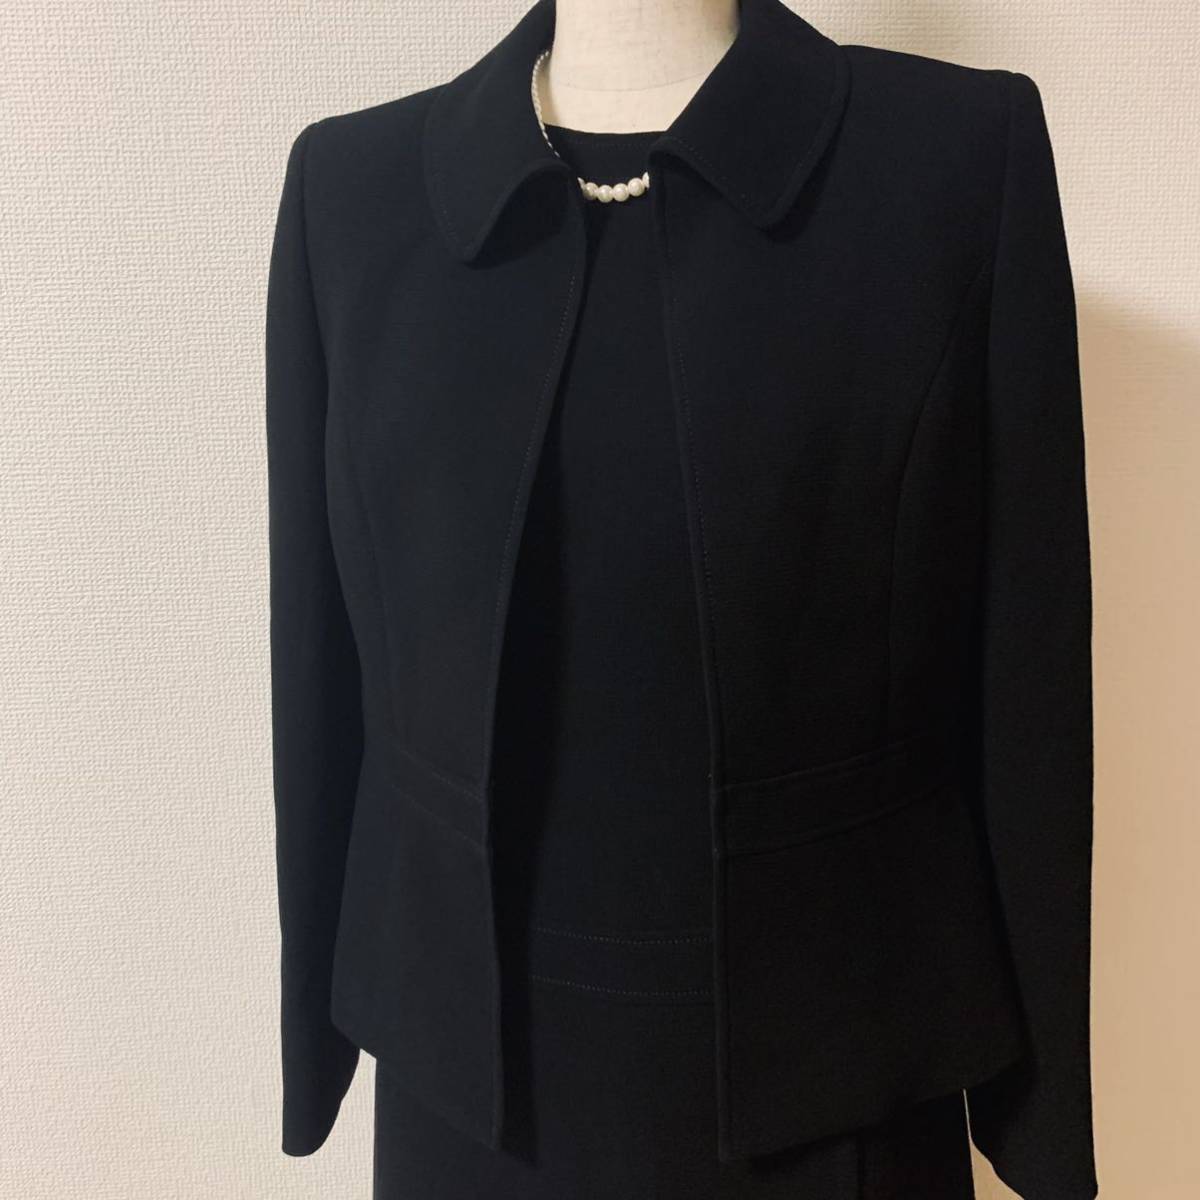 marie claire ブラックフォーマル スーツ ワンピース 日本製 マリクレール M 礼服 喪服 冠婚葬祭